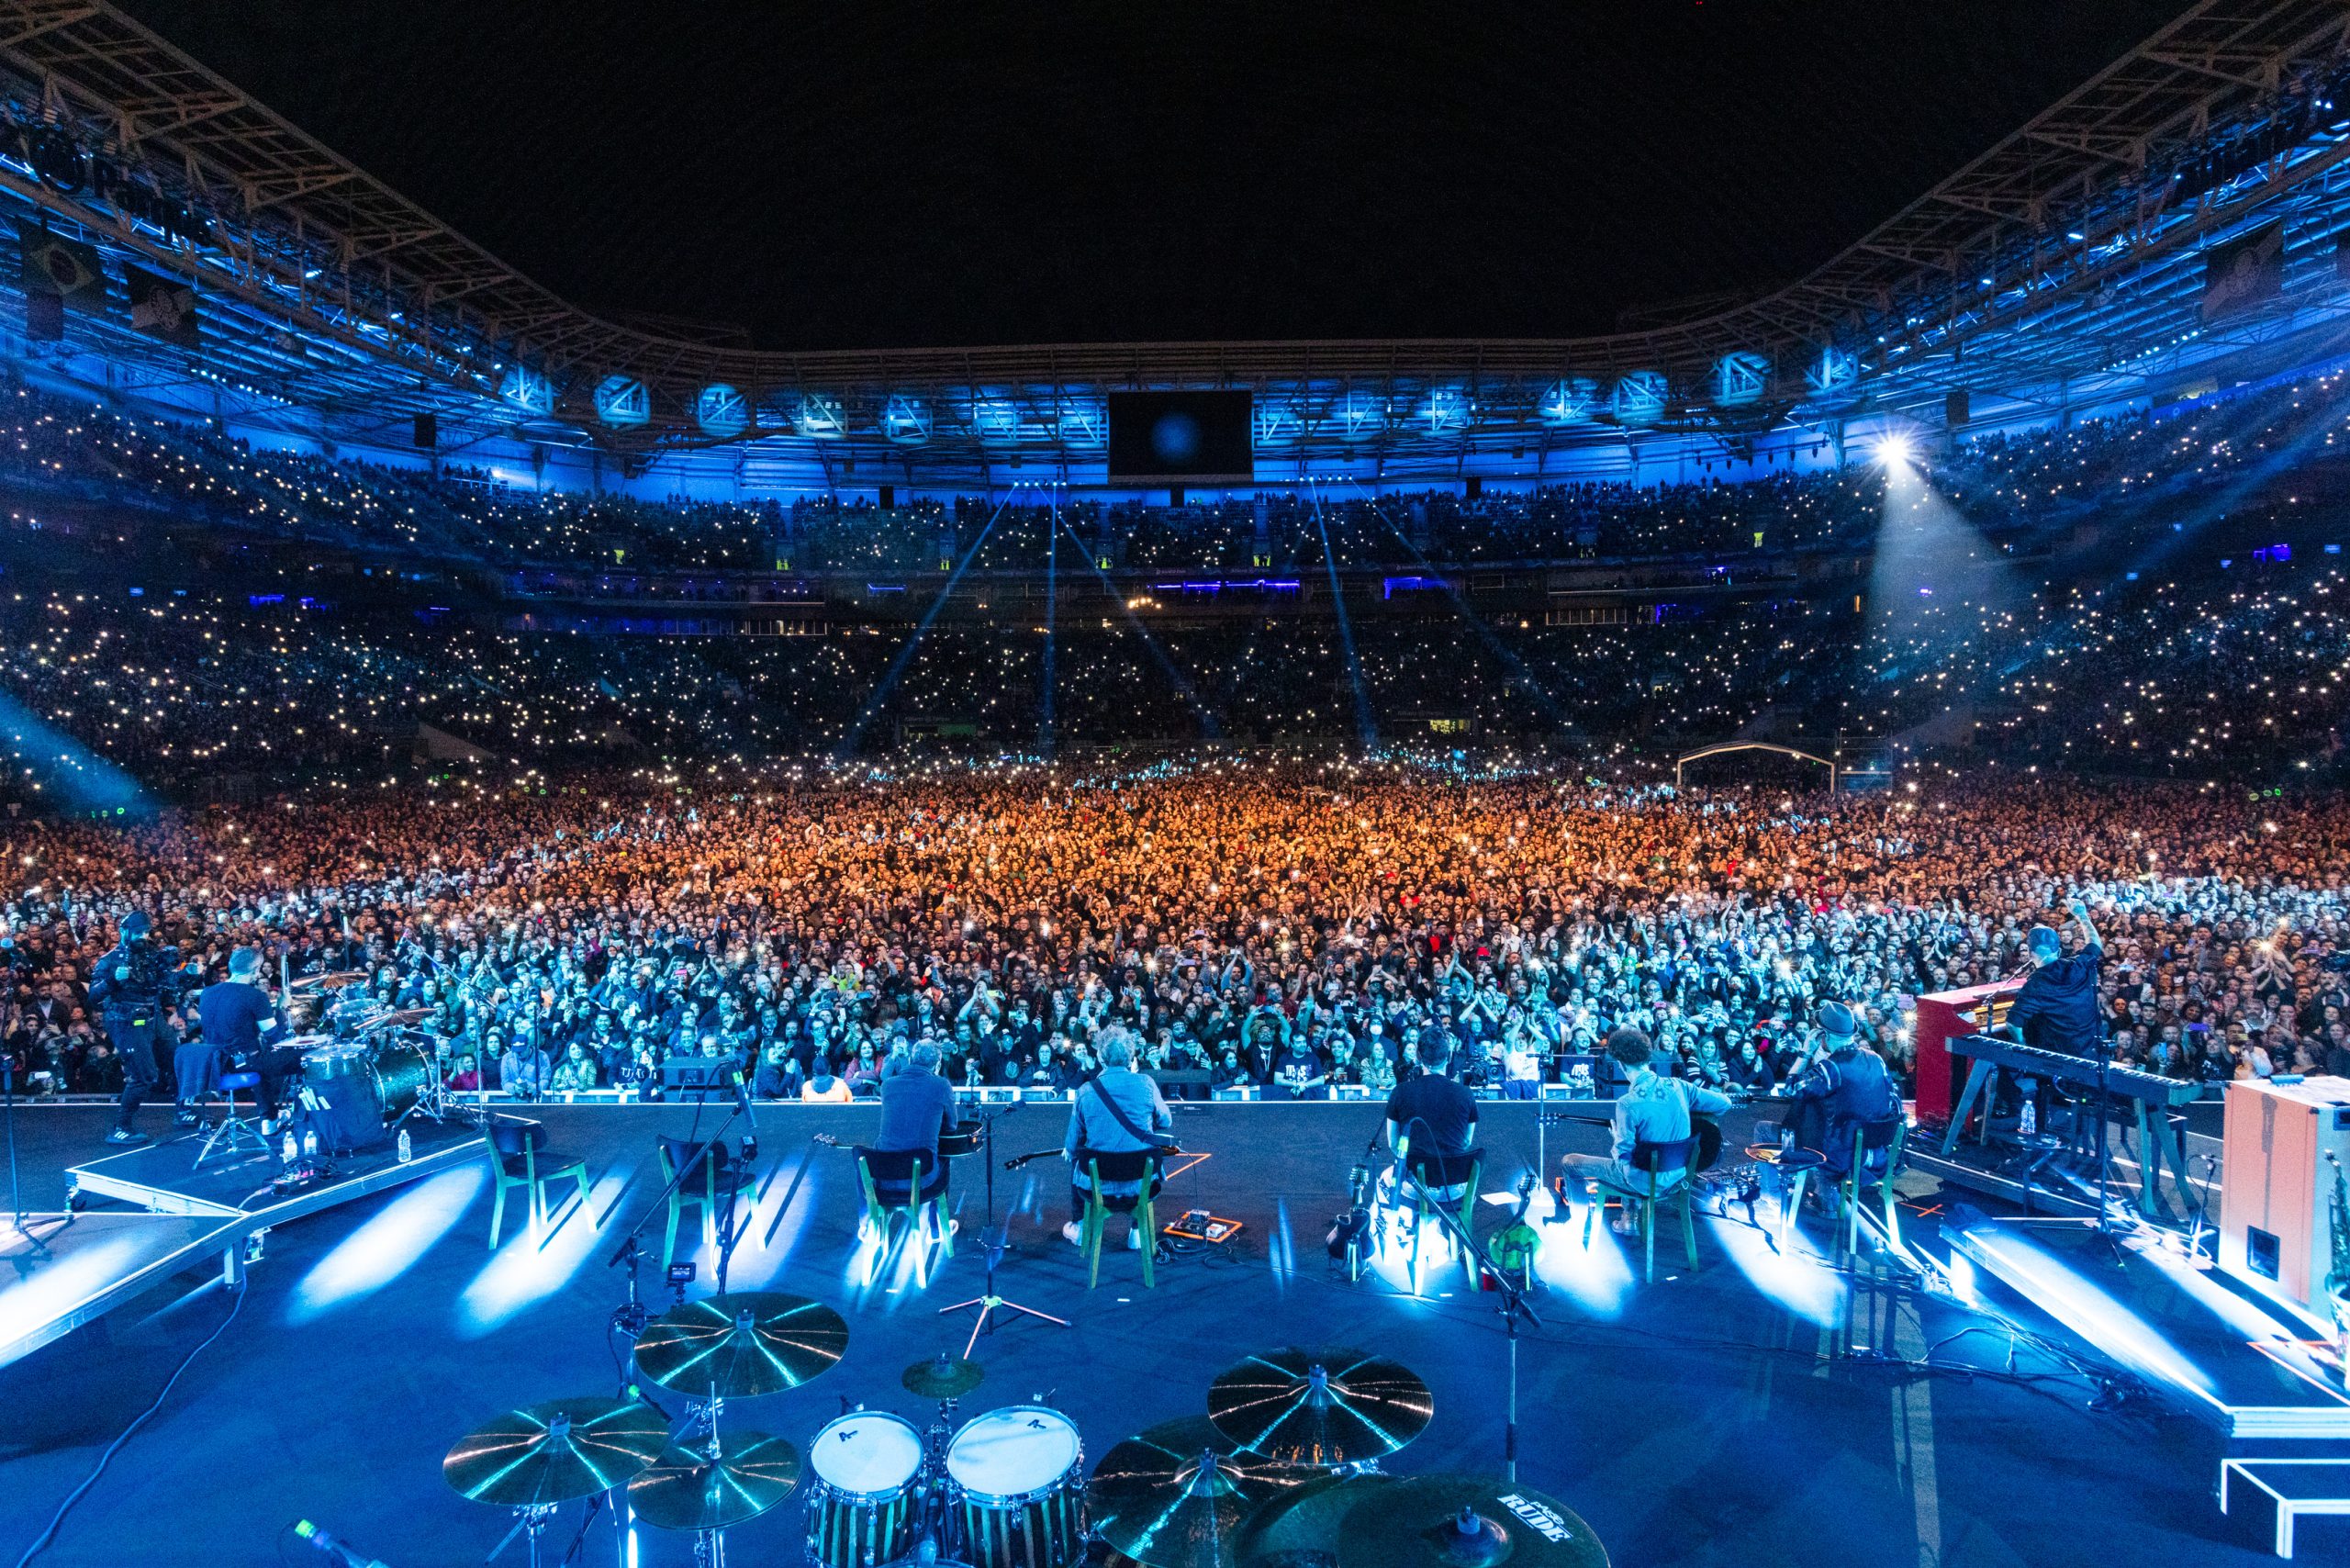 Titãs Encontro confirma sexto show no Allianz Parque e será a primeira banda brasileira a levar 300.000 pessoas à arena